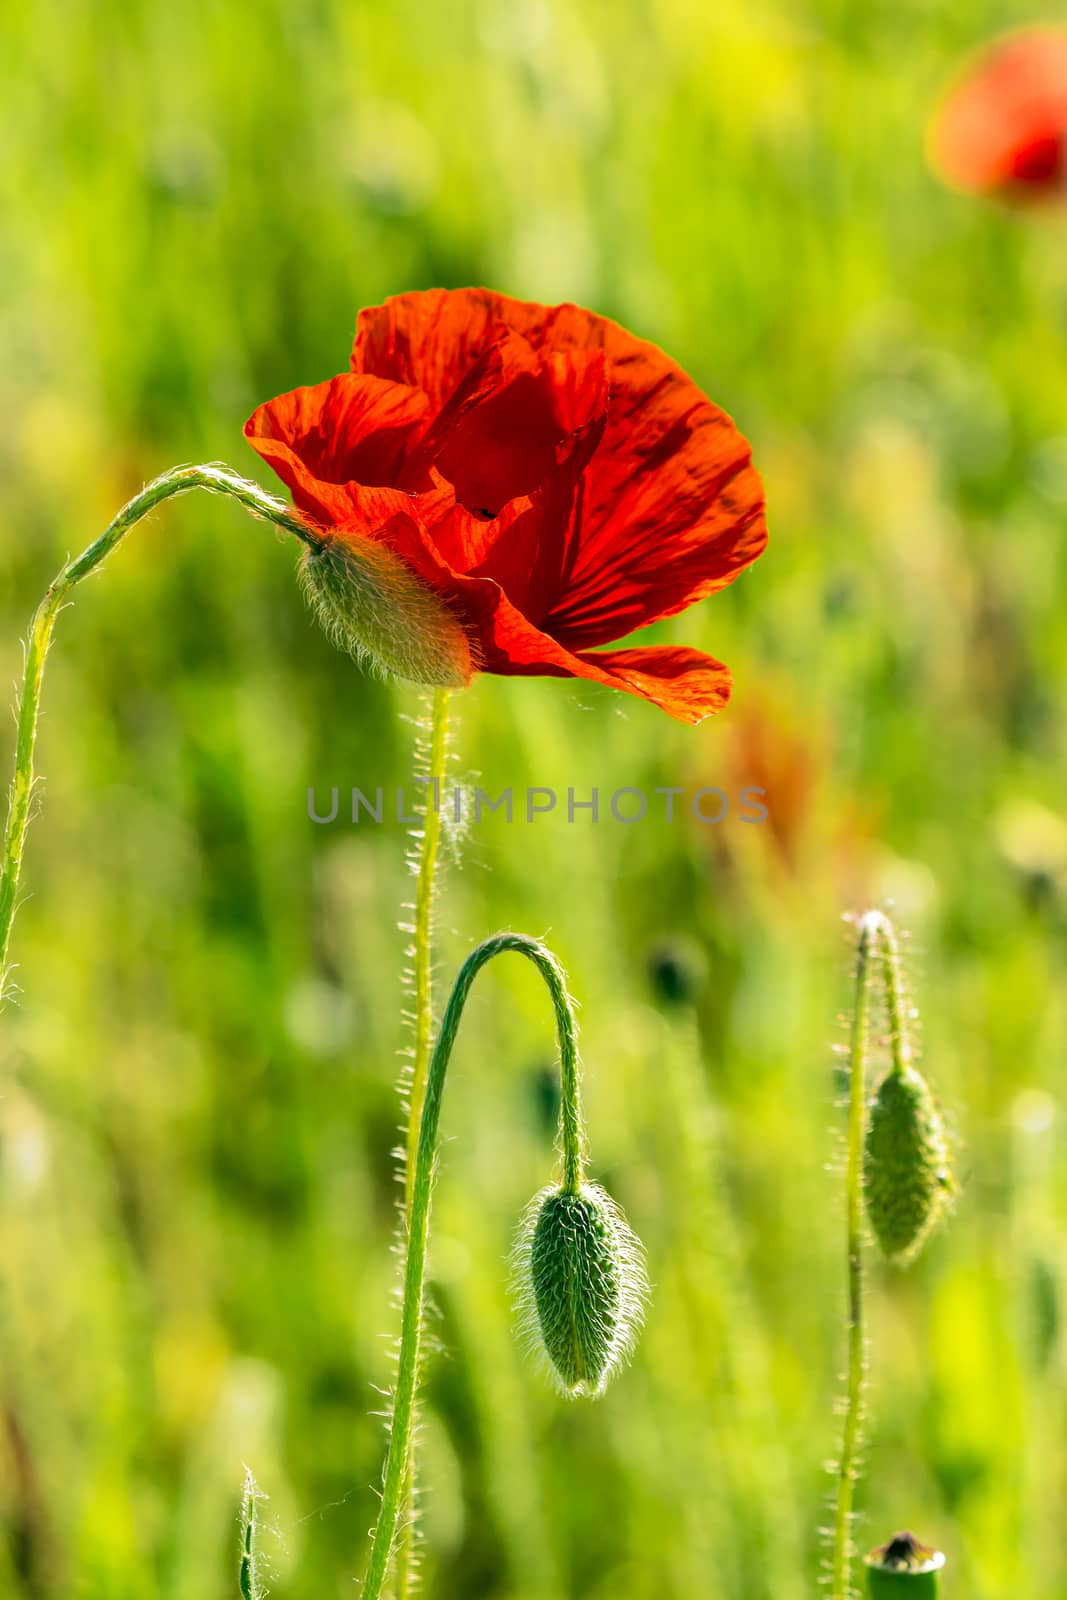 red poppy in the wheat field by Pellinni